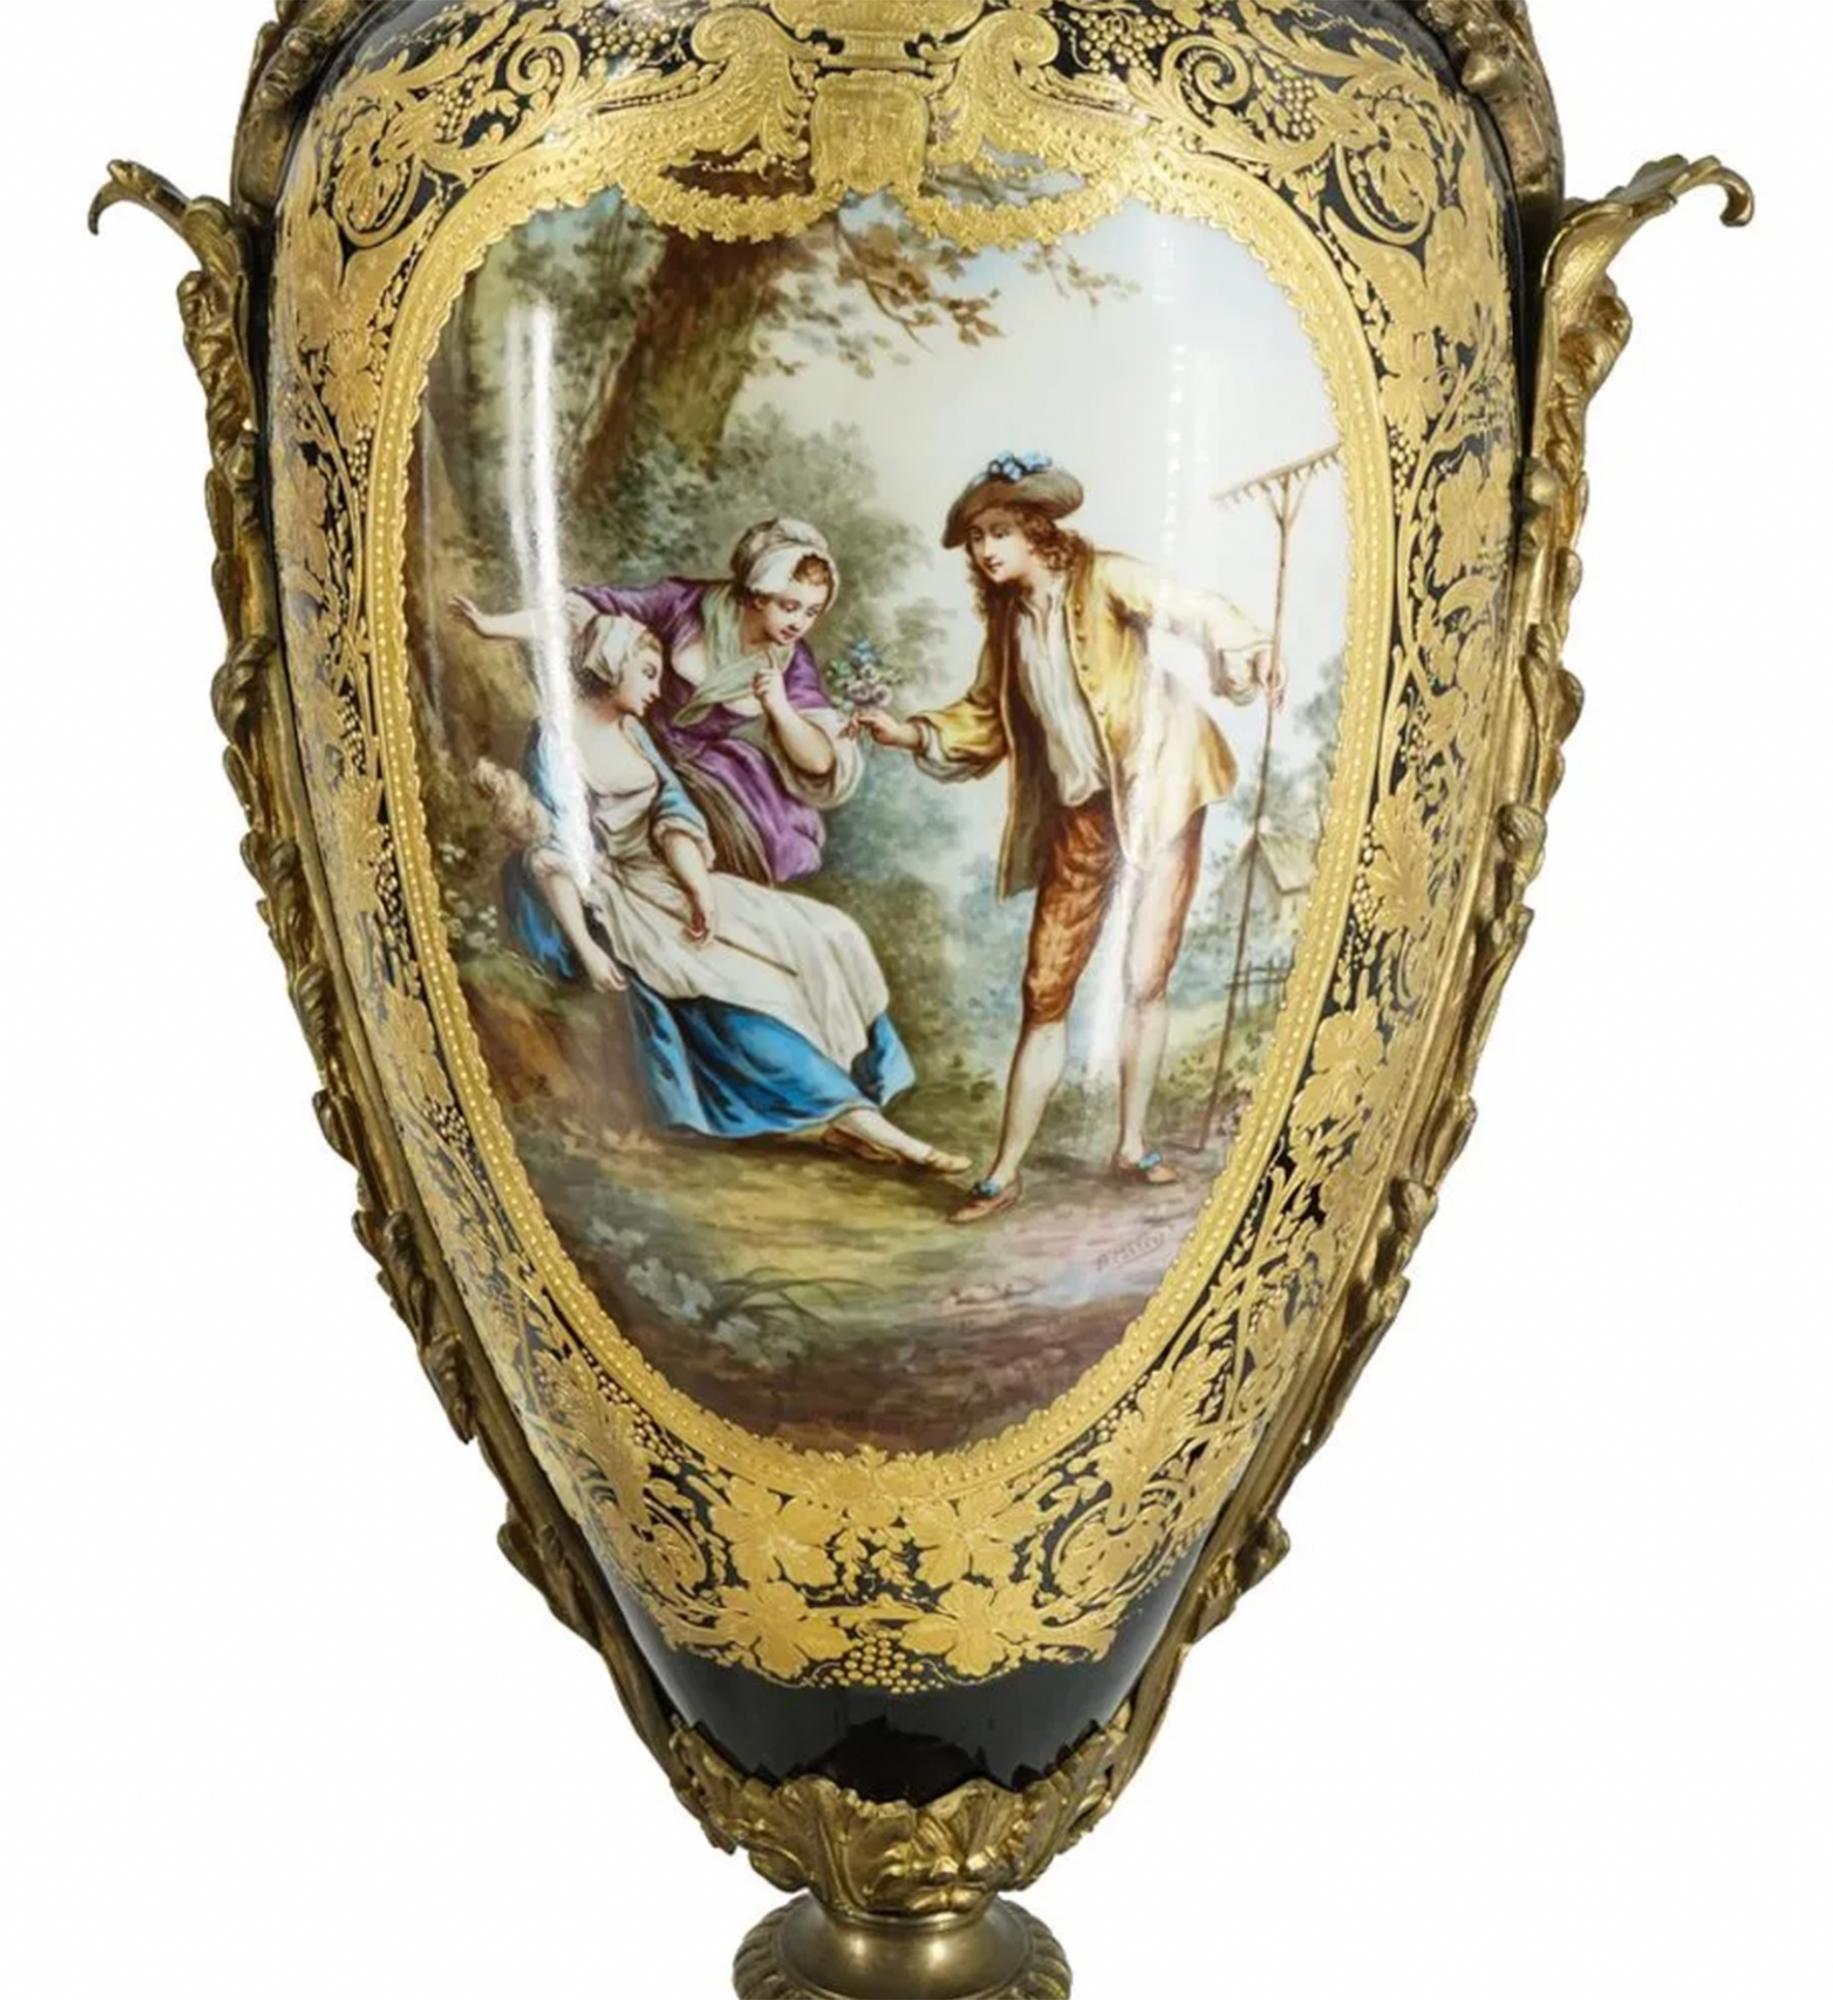 Importante paire d'urnes en porcelaine de Sèvres, chacune présentant un corps et un pied en porcelaine montés sur une base en bronze doré et ornés de garnitures et de poignées en bronze doré en forme de feuillage. Chaque pièce porte de part et